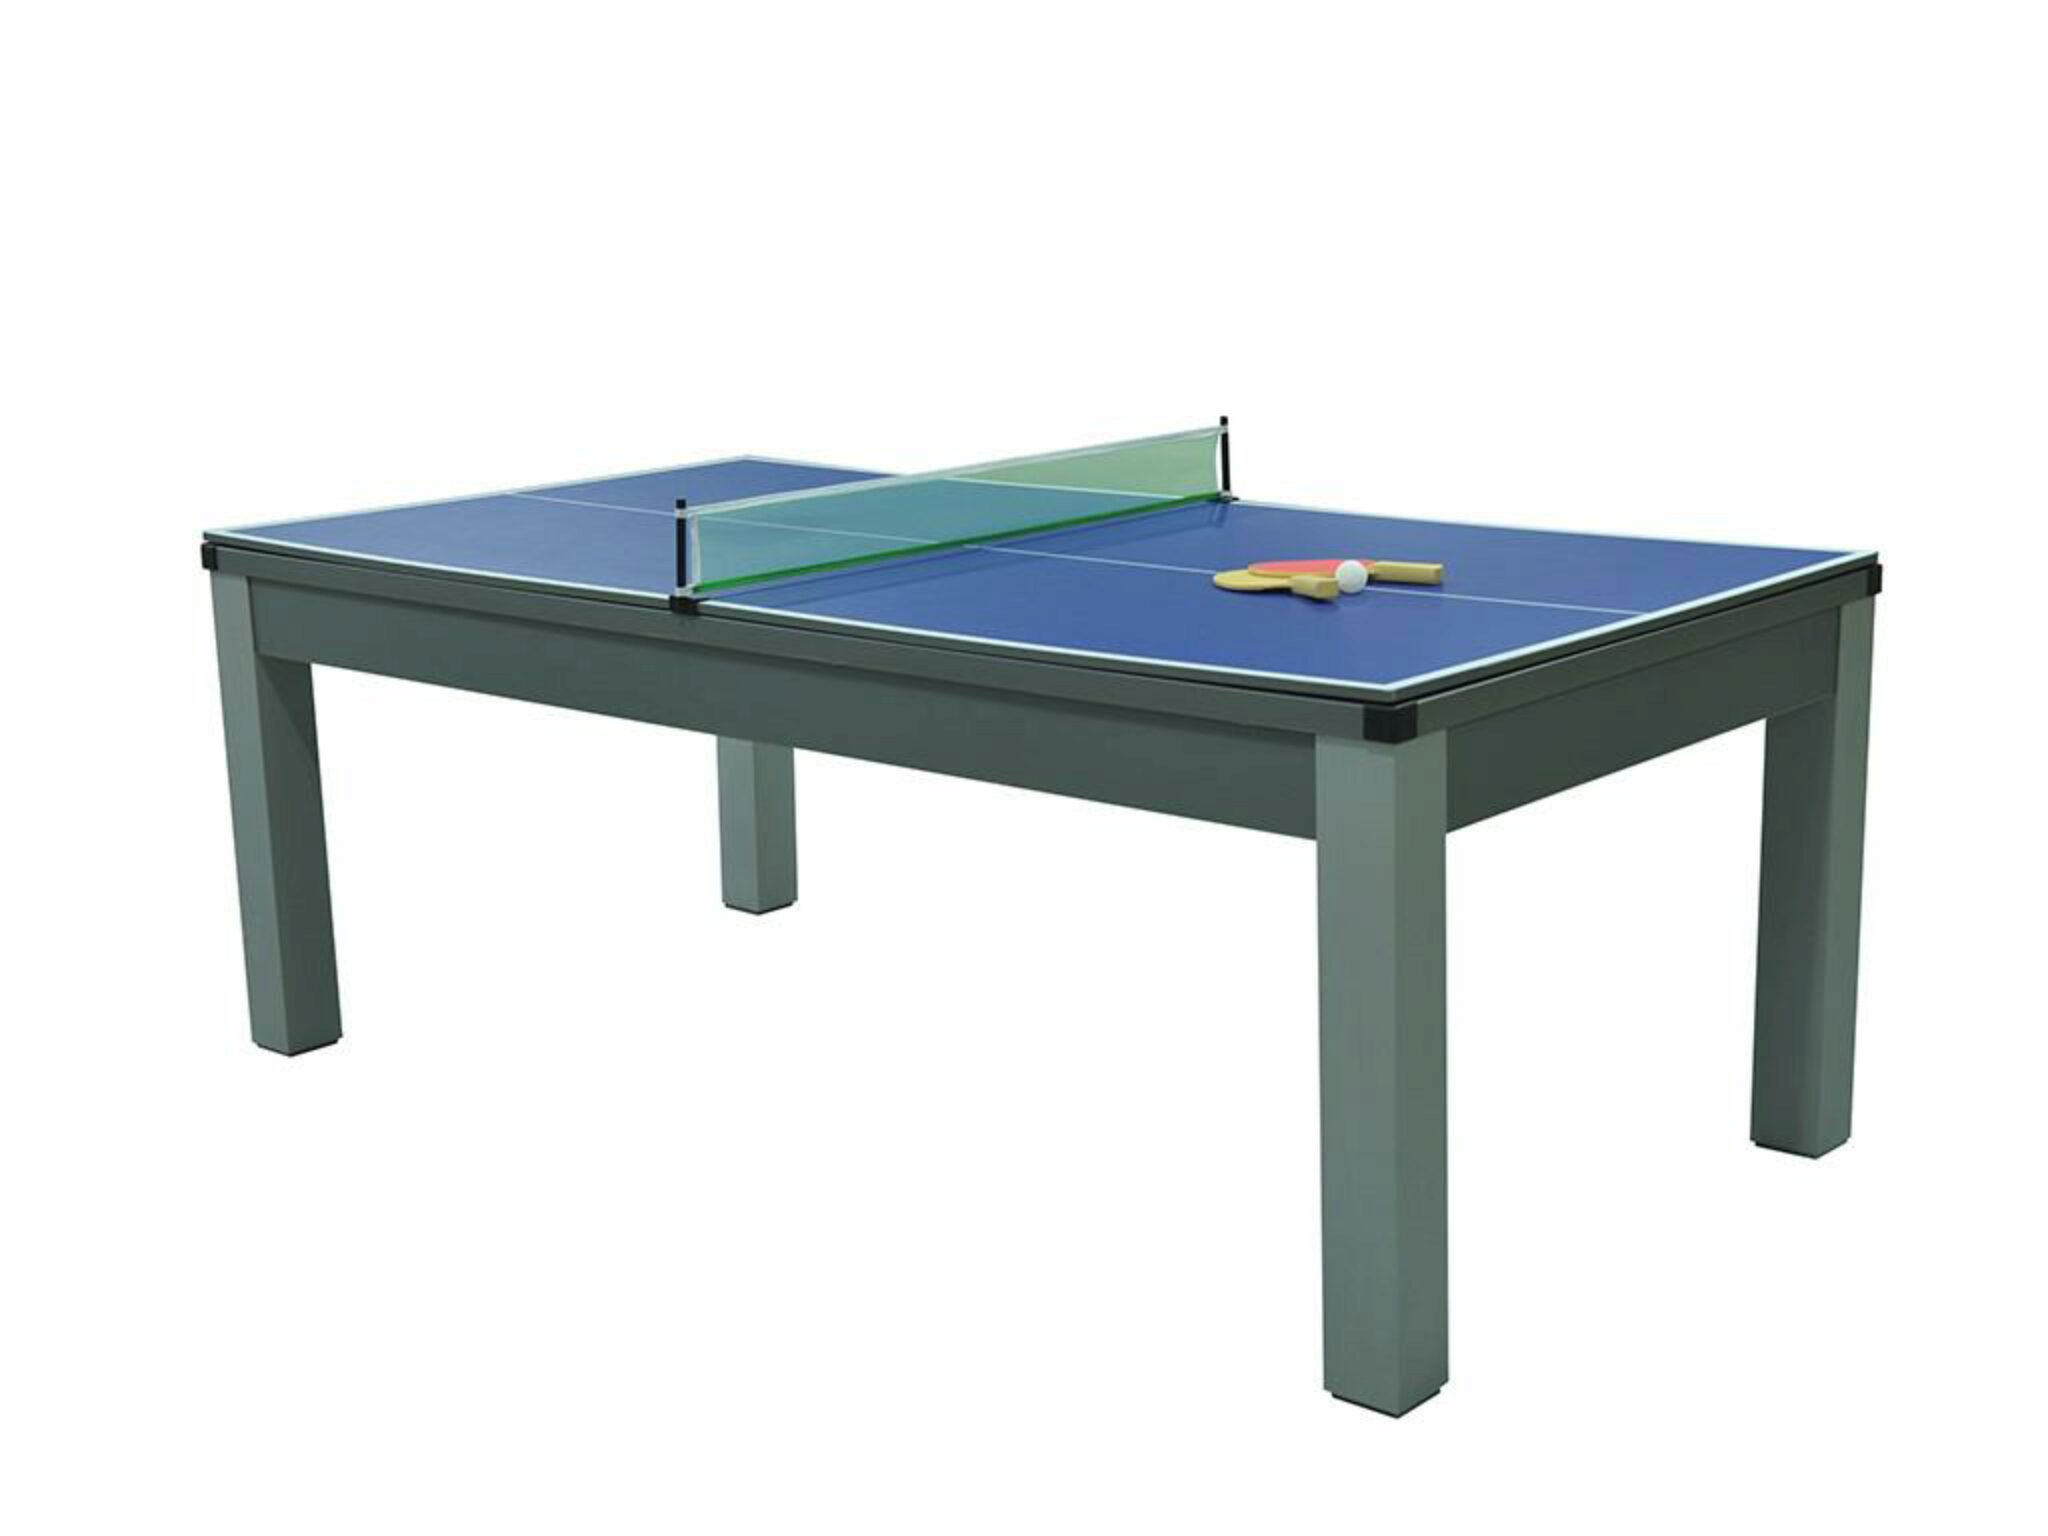 Top Miglior Tavolo Da Ping Pong Per Tavolo Da Biliardo Recensioni